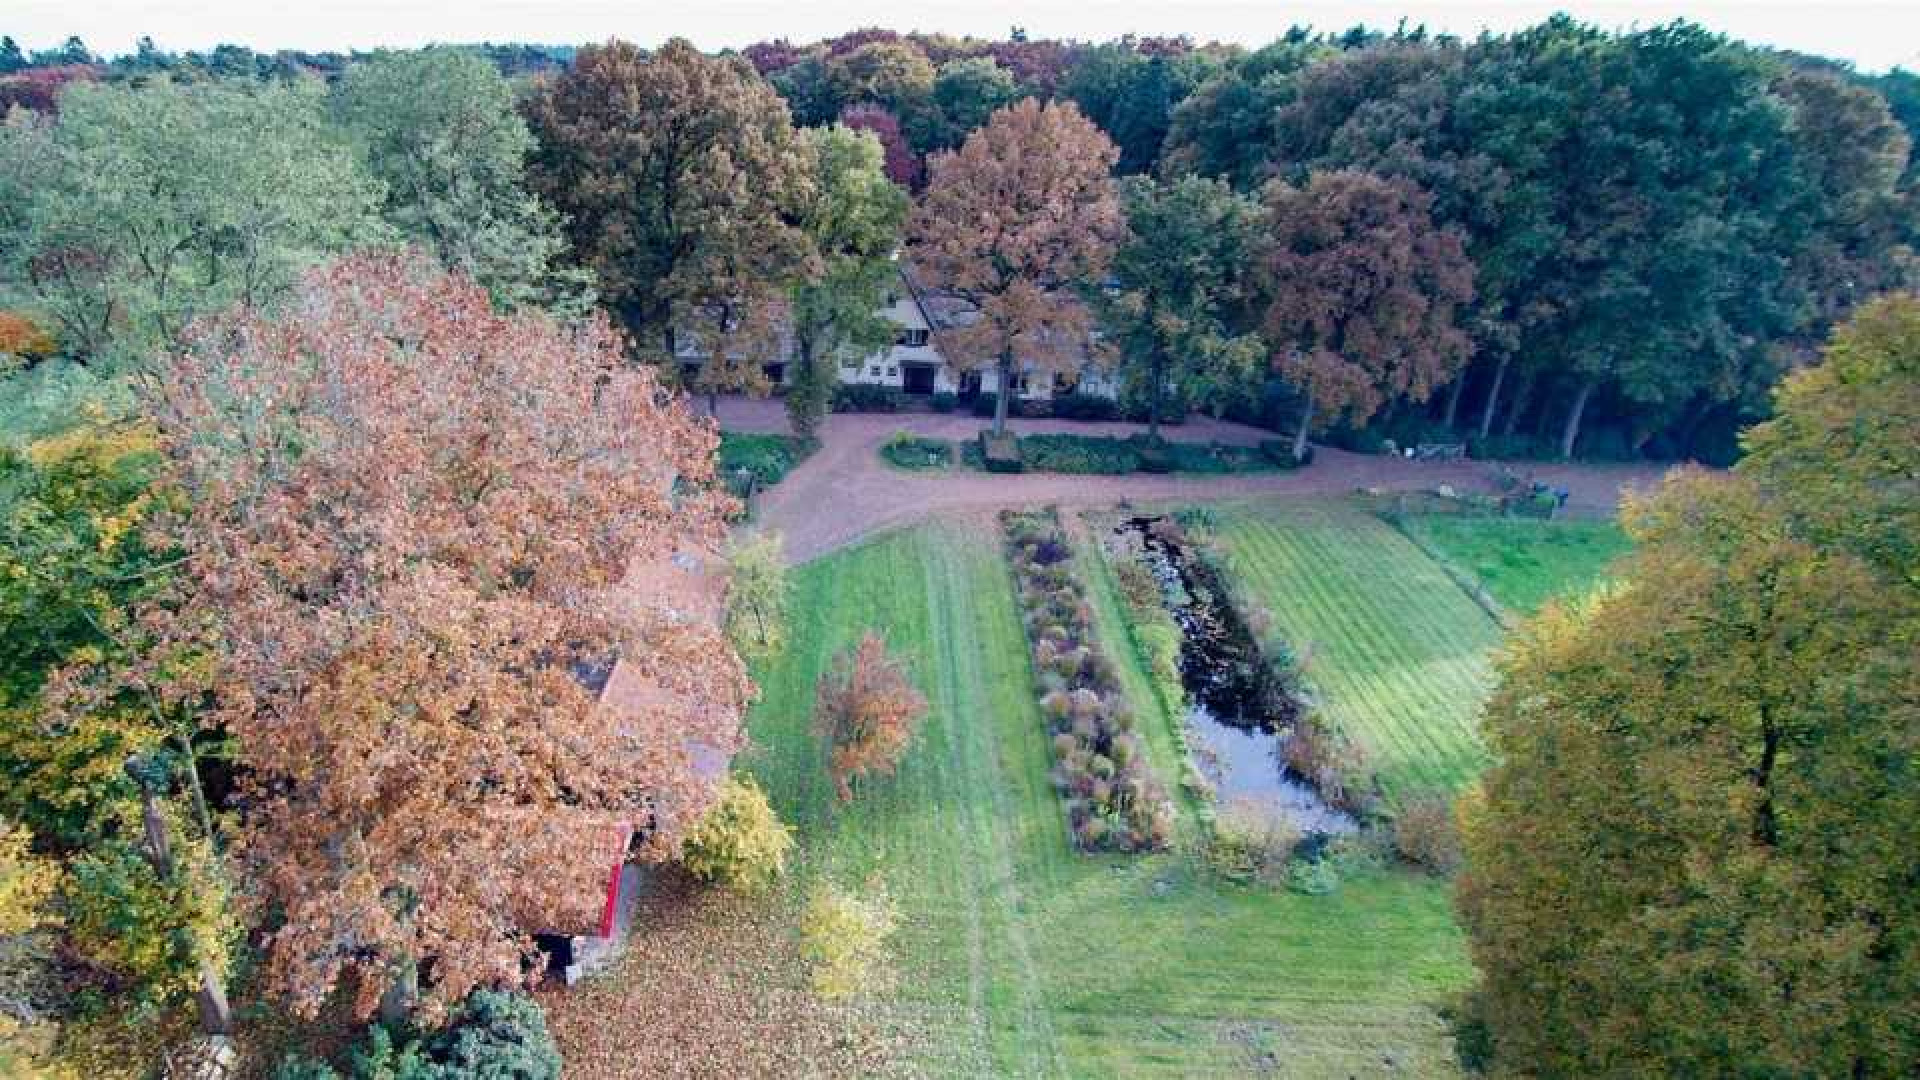 Oud PvdA coryfee Marcel van Dam zet zijn miljoenen landhuis te koop. Zie foto's 19